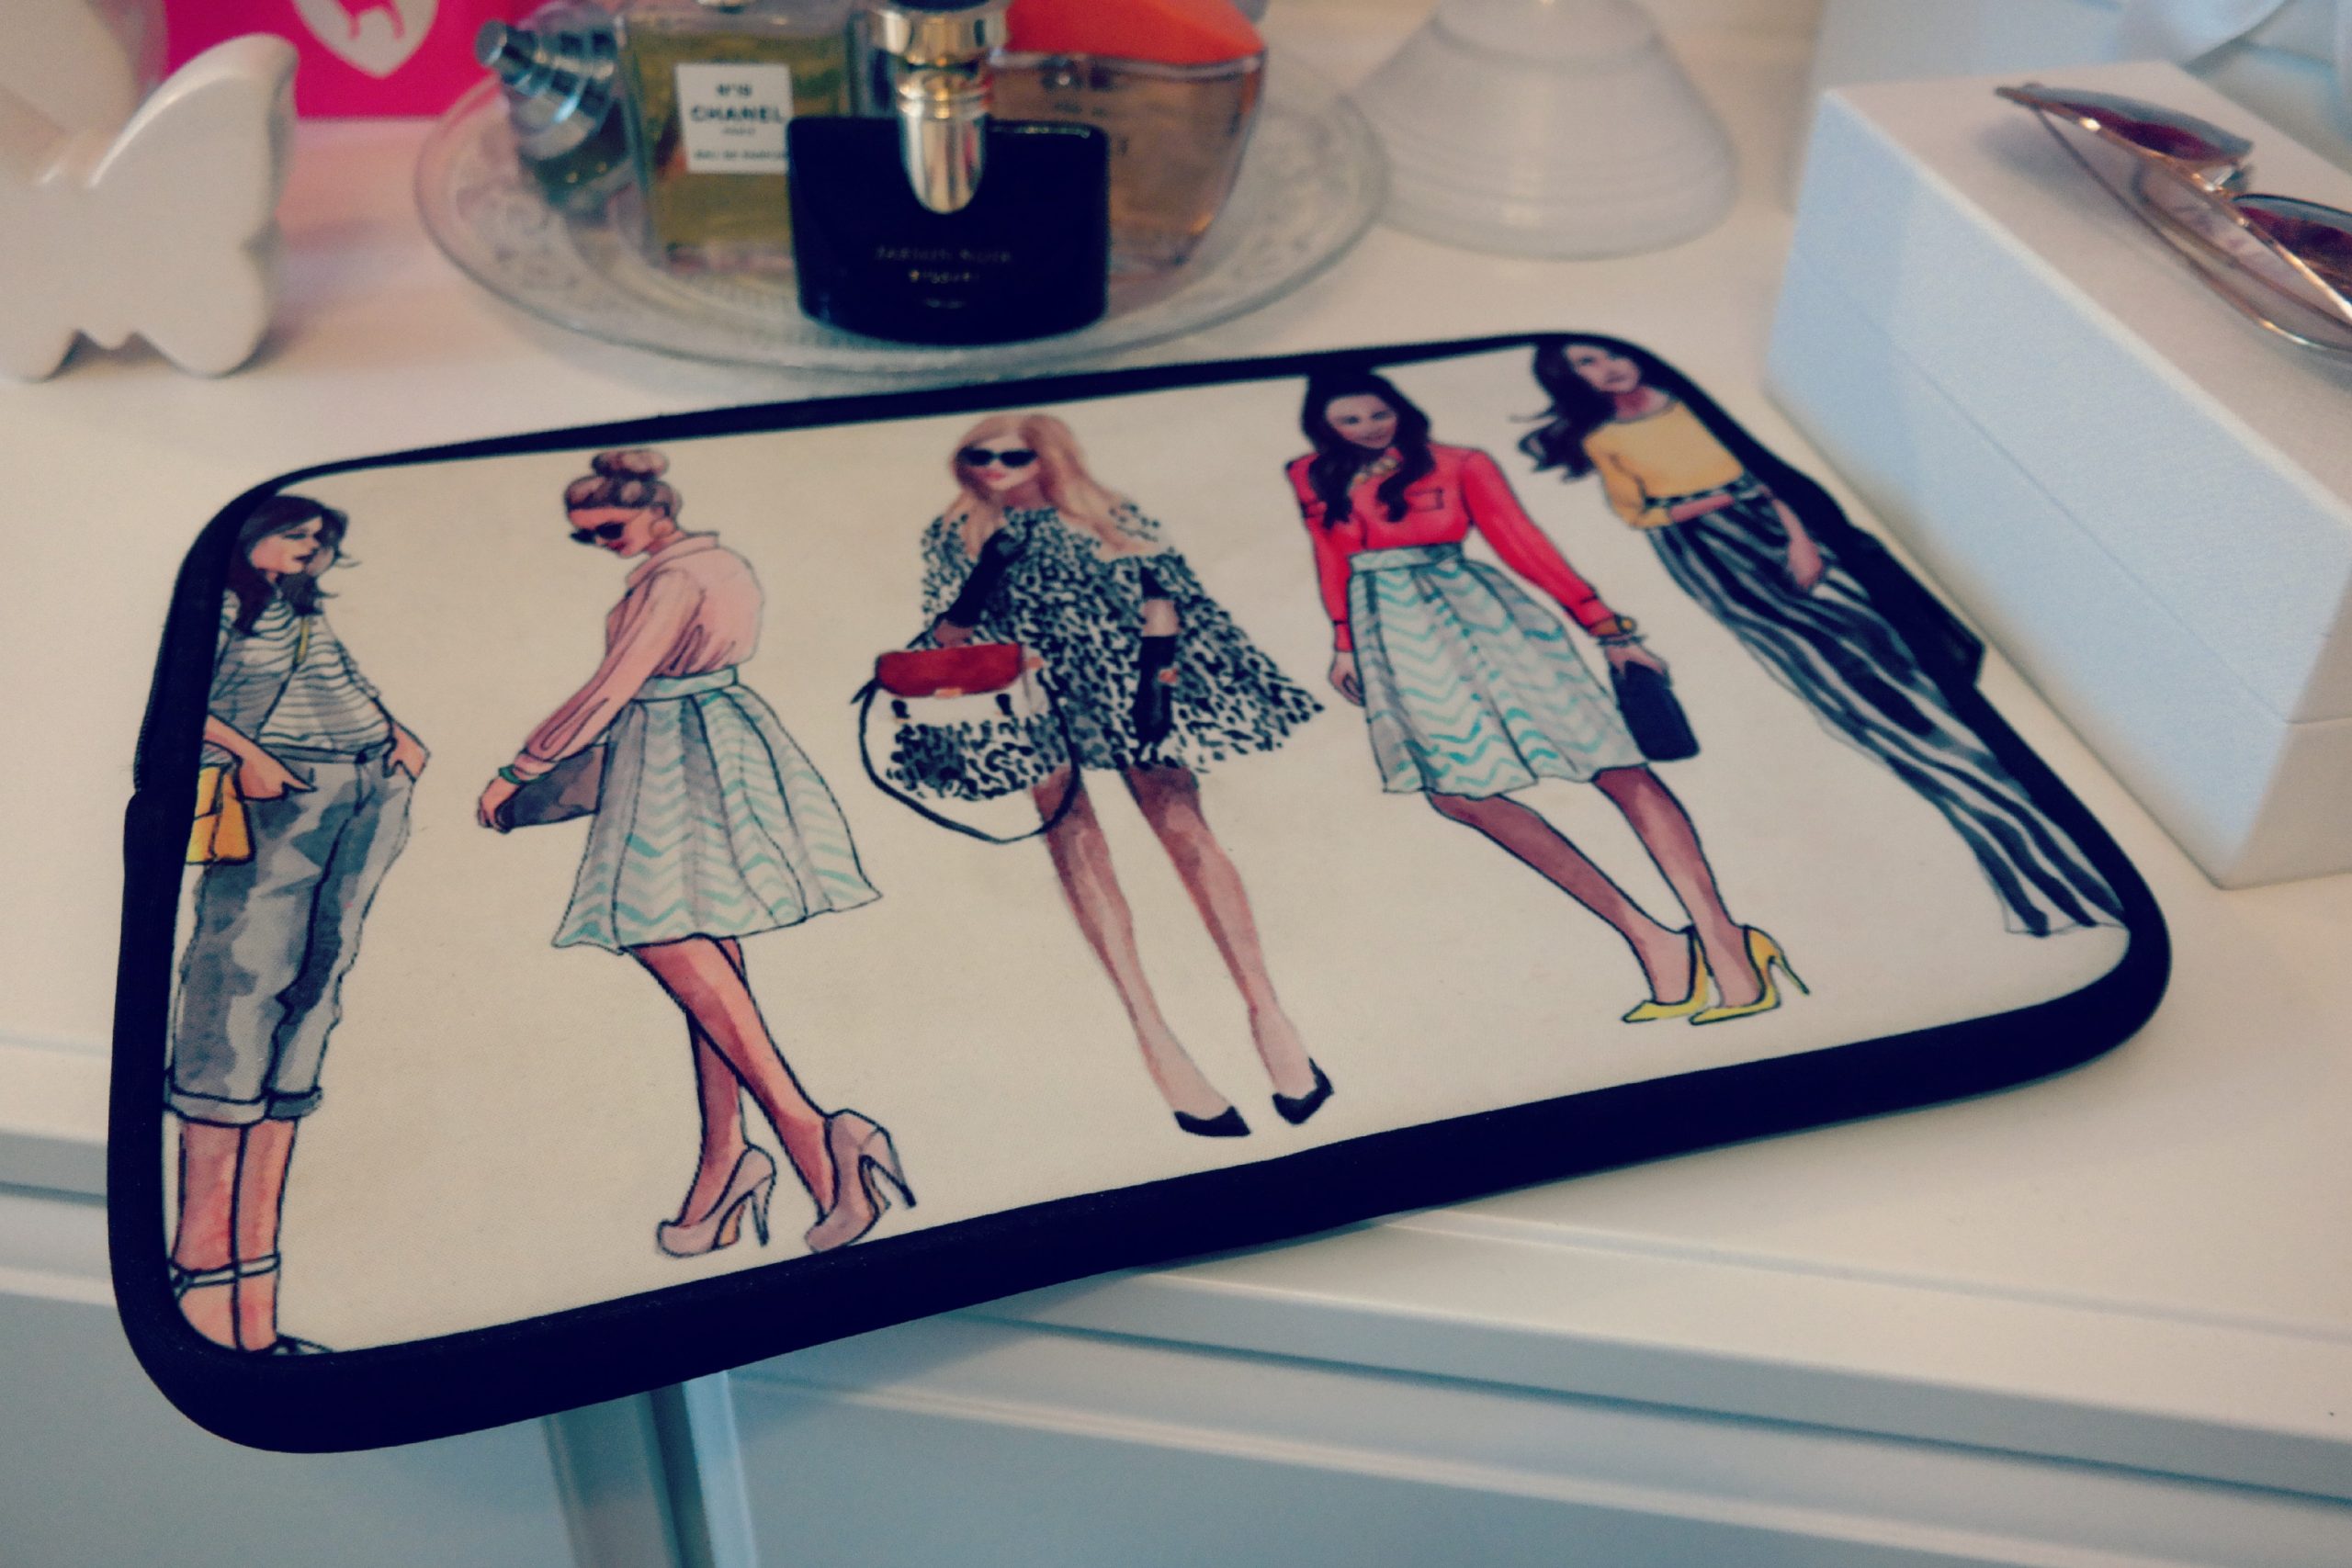 Macbookcase im Fashionlook